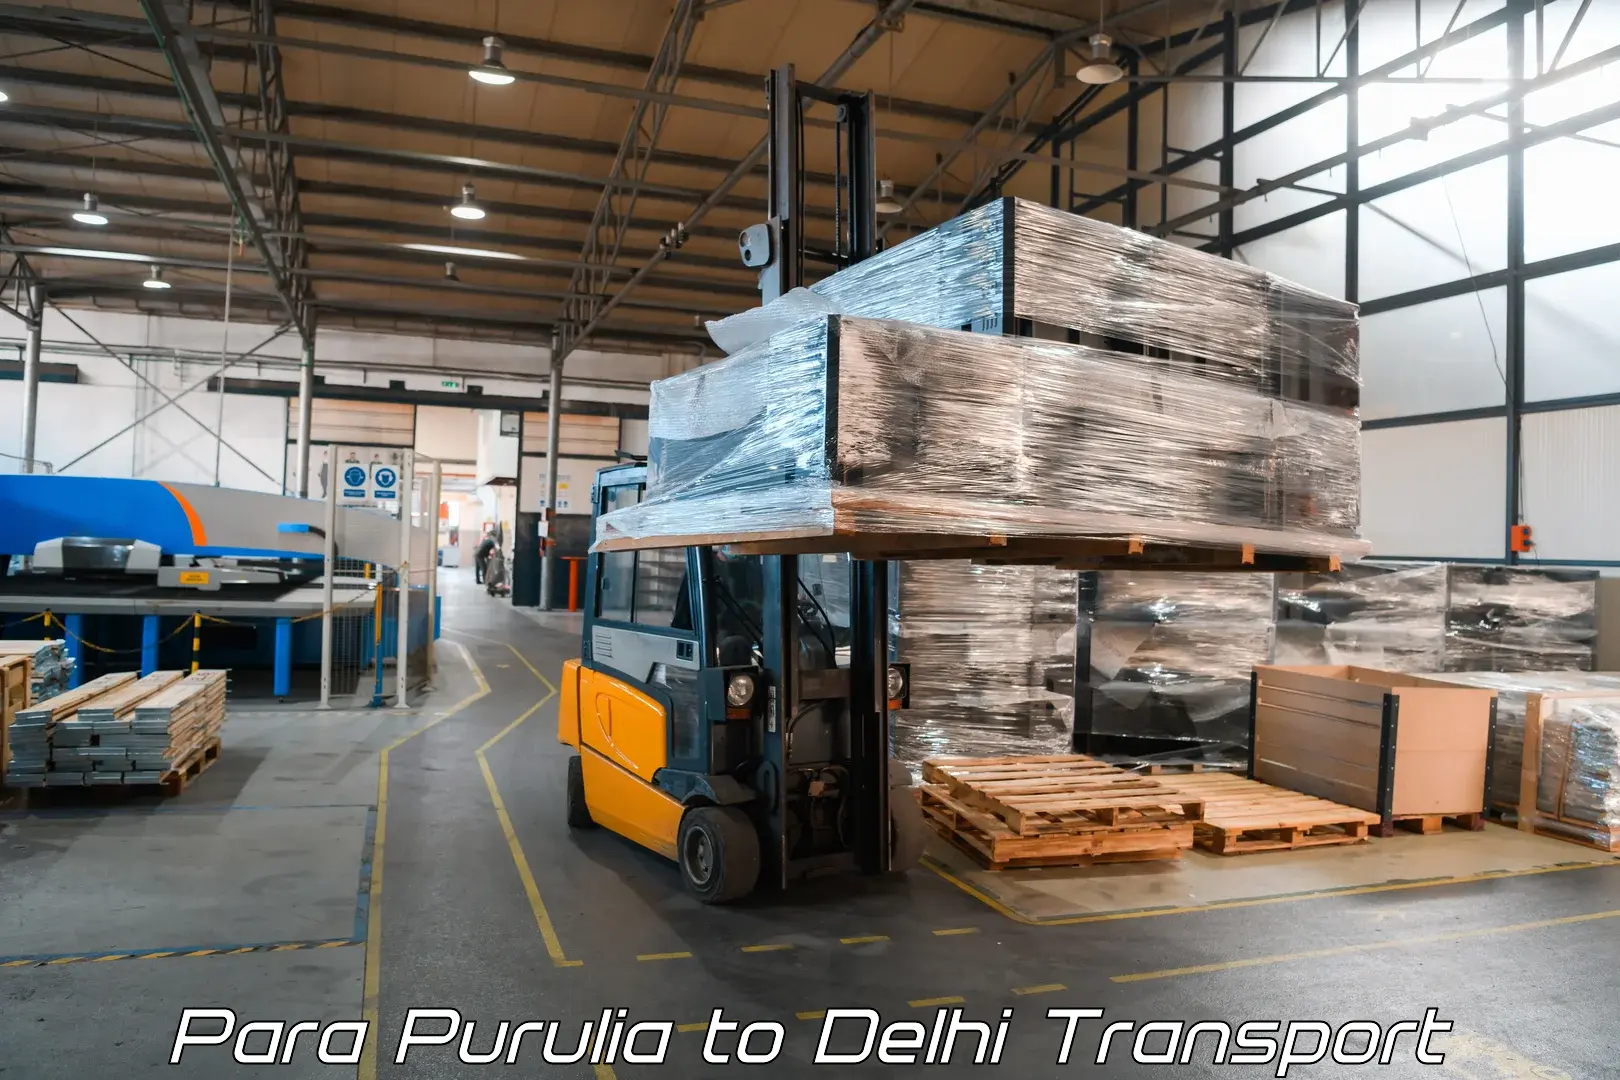 Pick up transport service Para Purulia to IIT Delhi